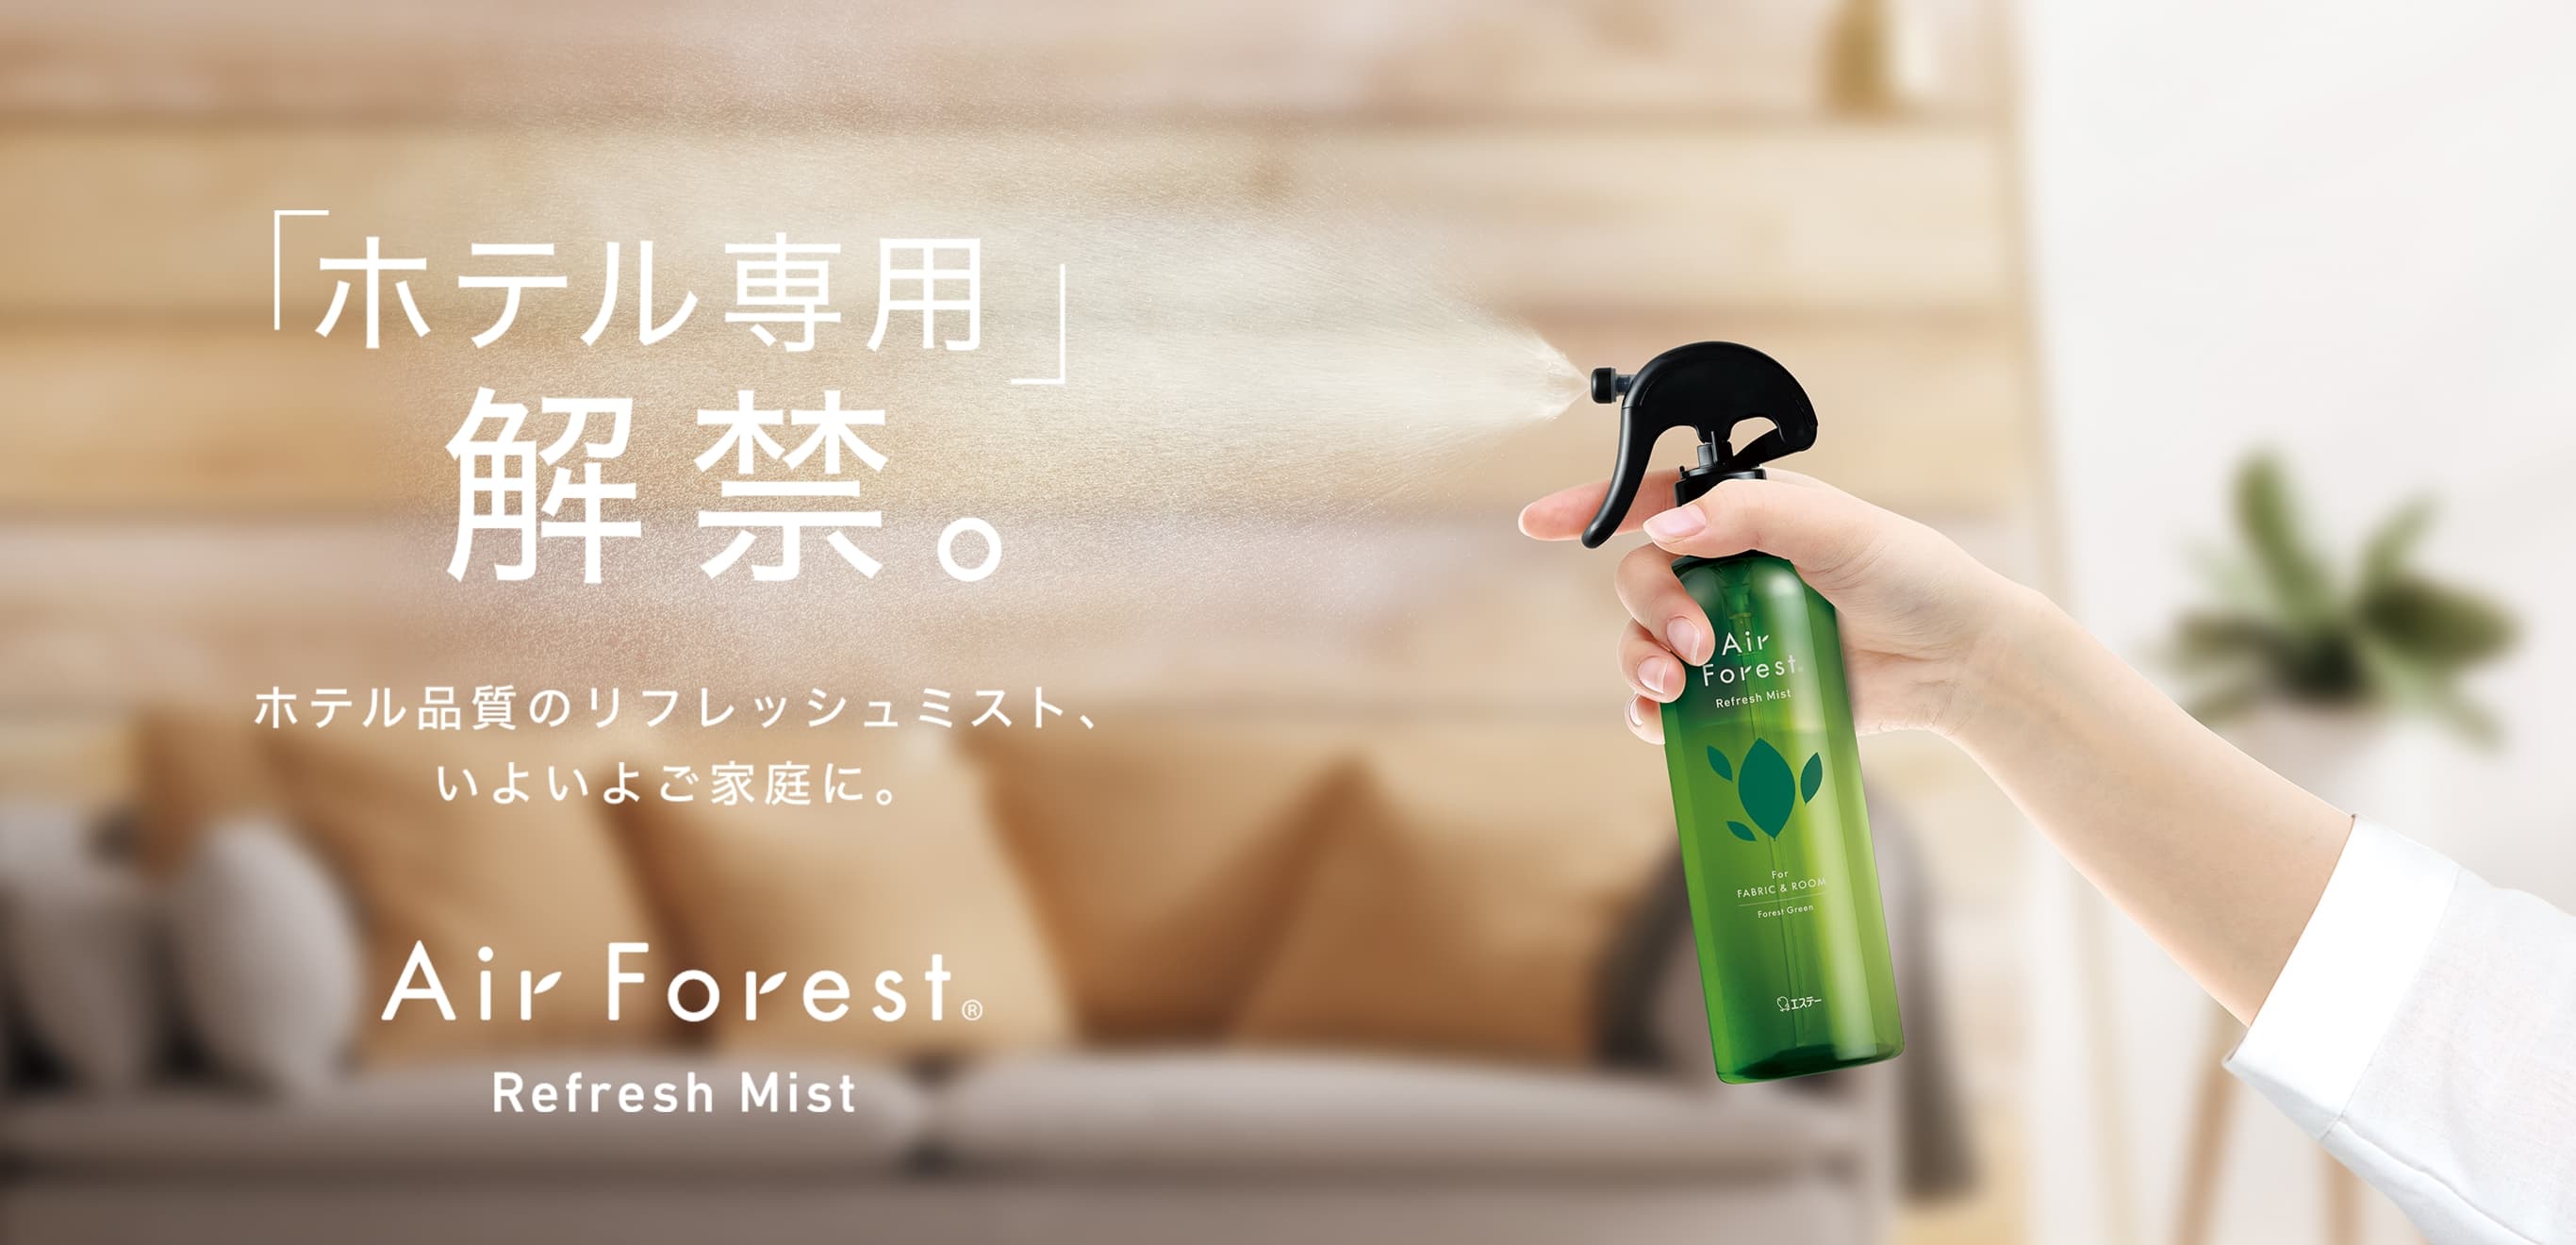 「ホテル専用」解禁。 プロの求めるこの品質、いよいよご家庭に。 AirForest Refresh Mist